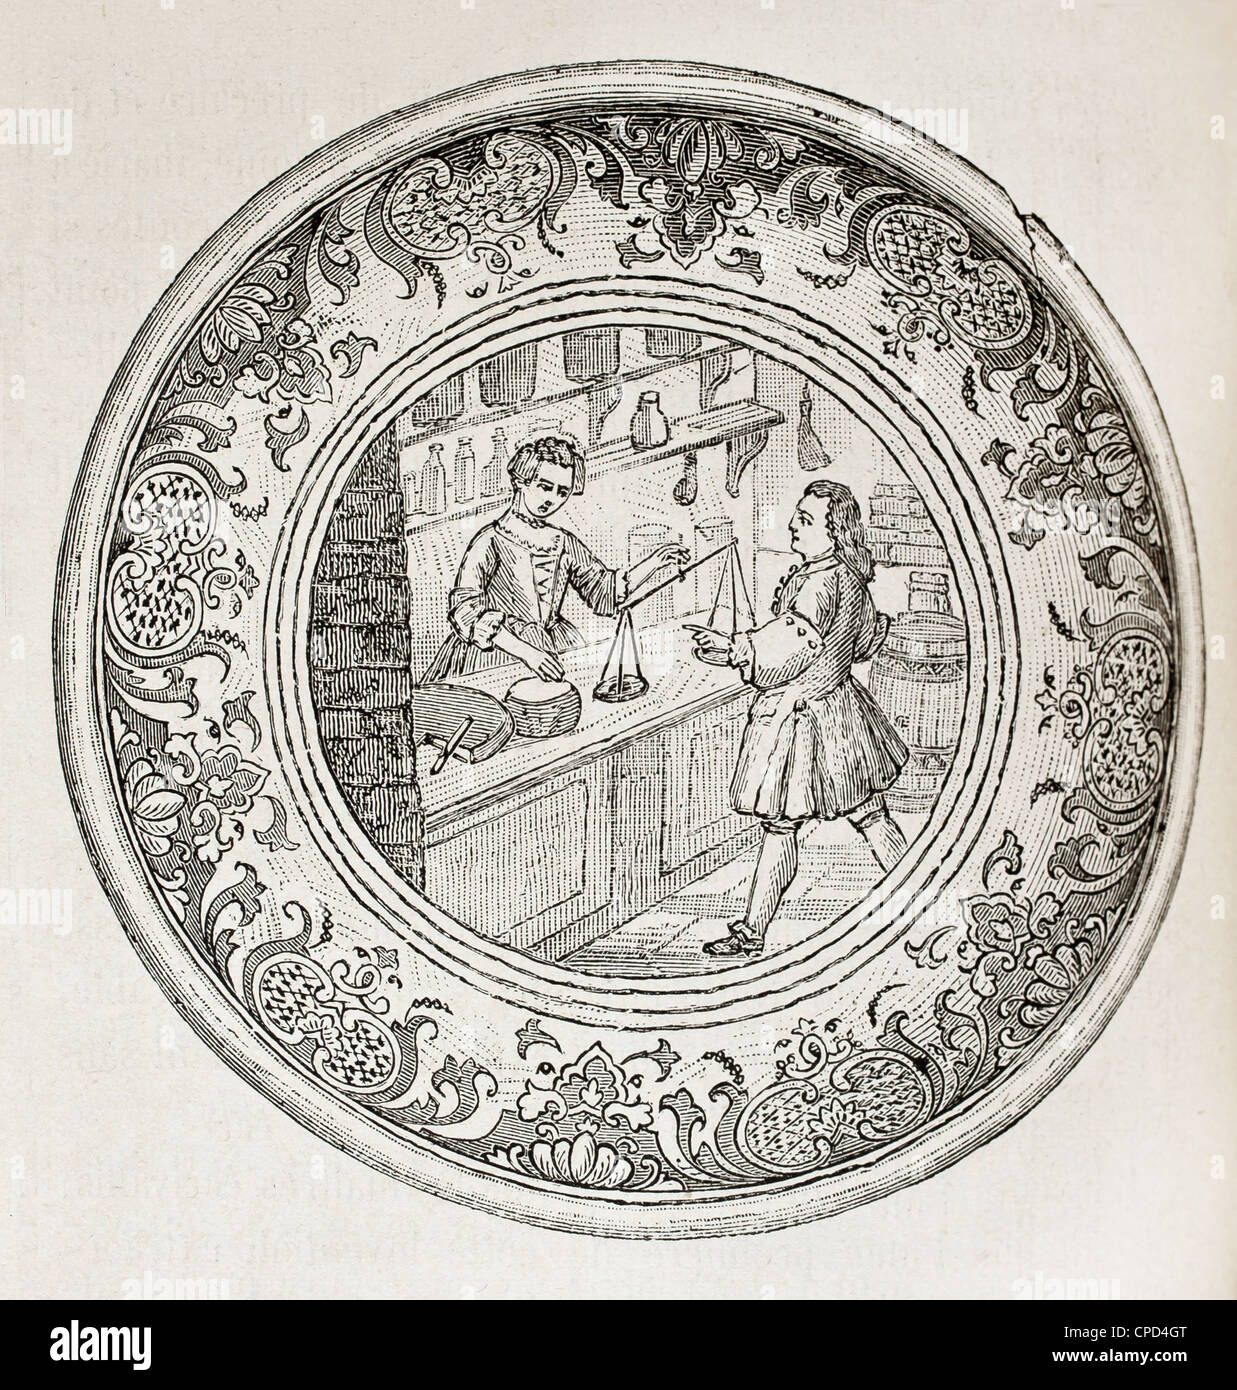 Alten gravierte Darstellung ein antiker Fayence Salatschüssel mit Lebensmittelgeschäft Dekoration auf der Unterseite Stockfoto